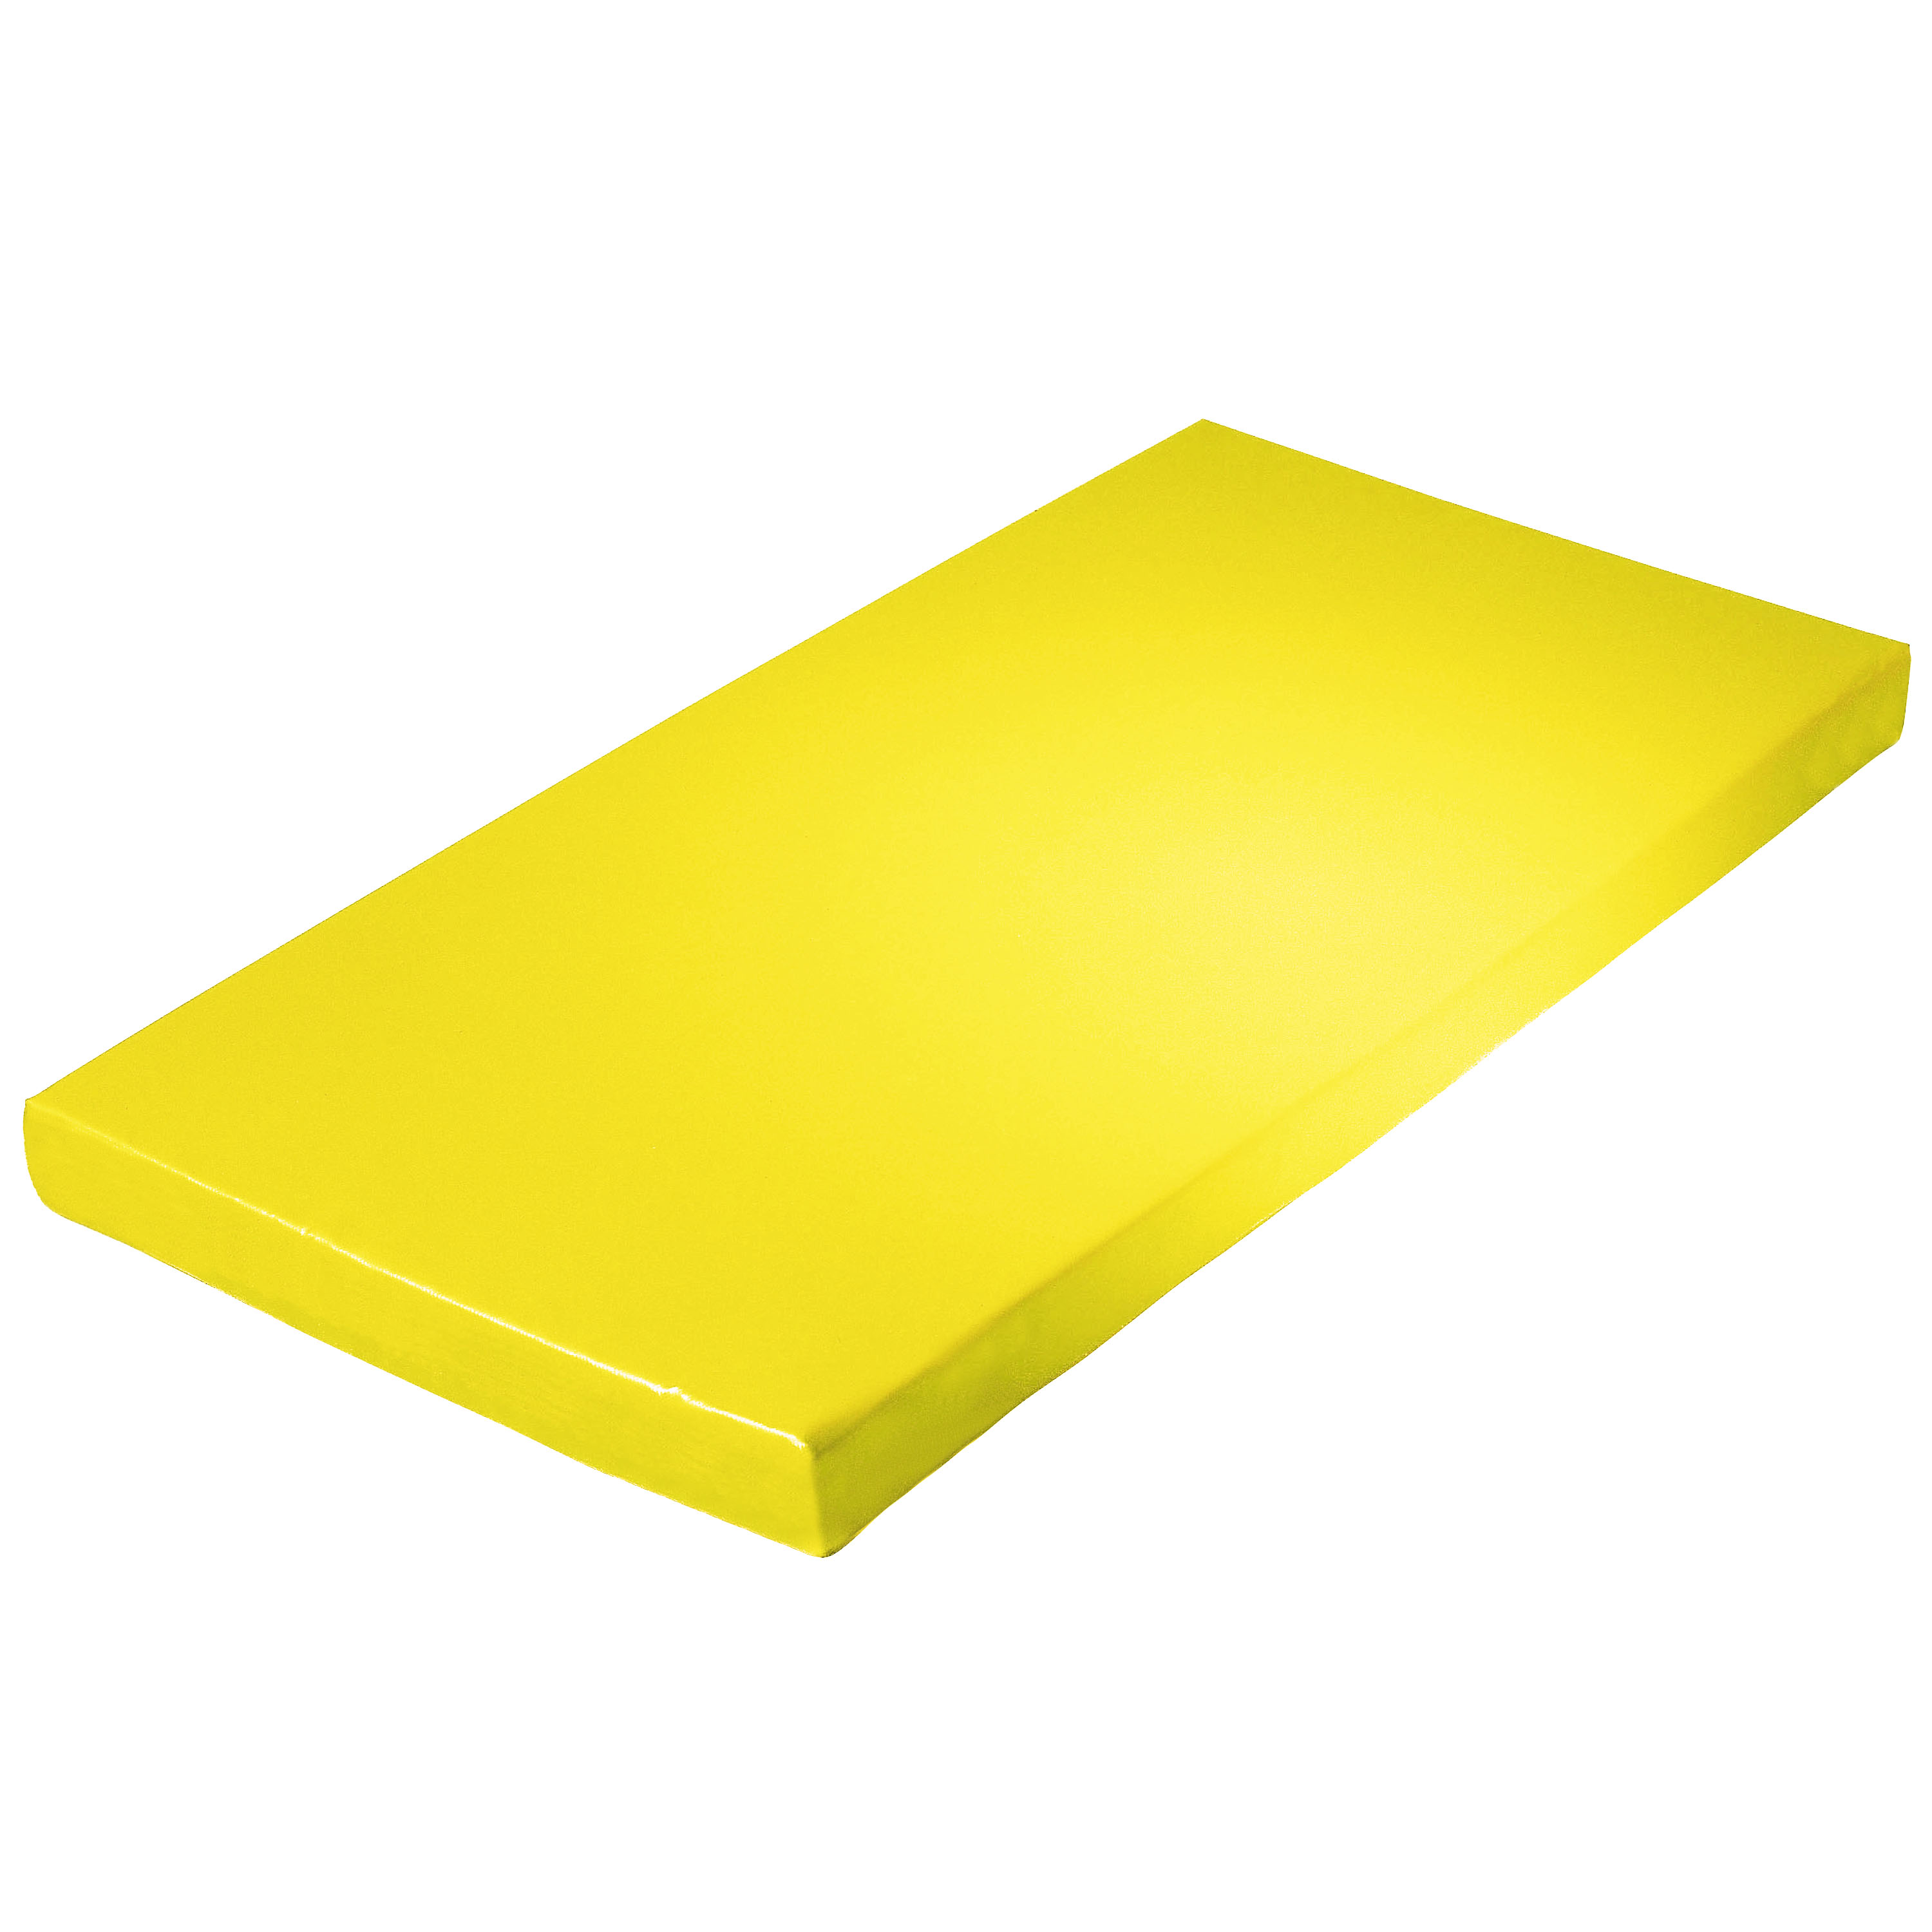 Super-Leichtturnmatte 150 x 100 x 6 cm, gelb